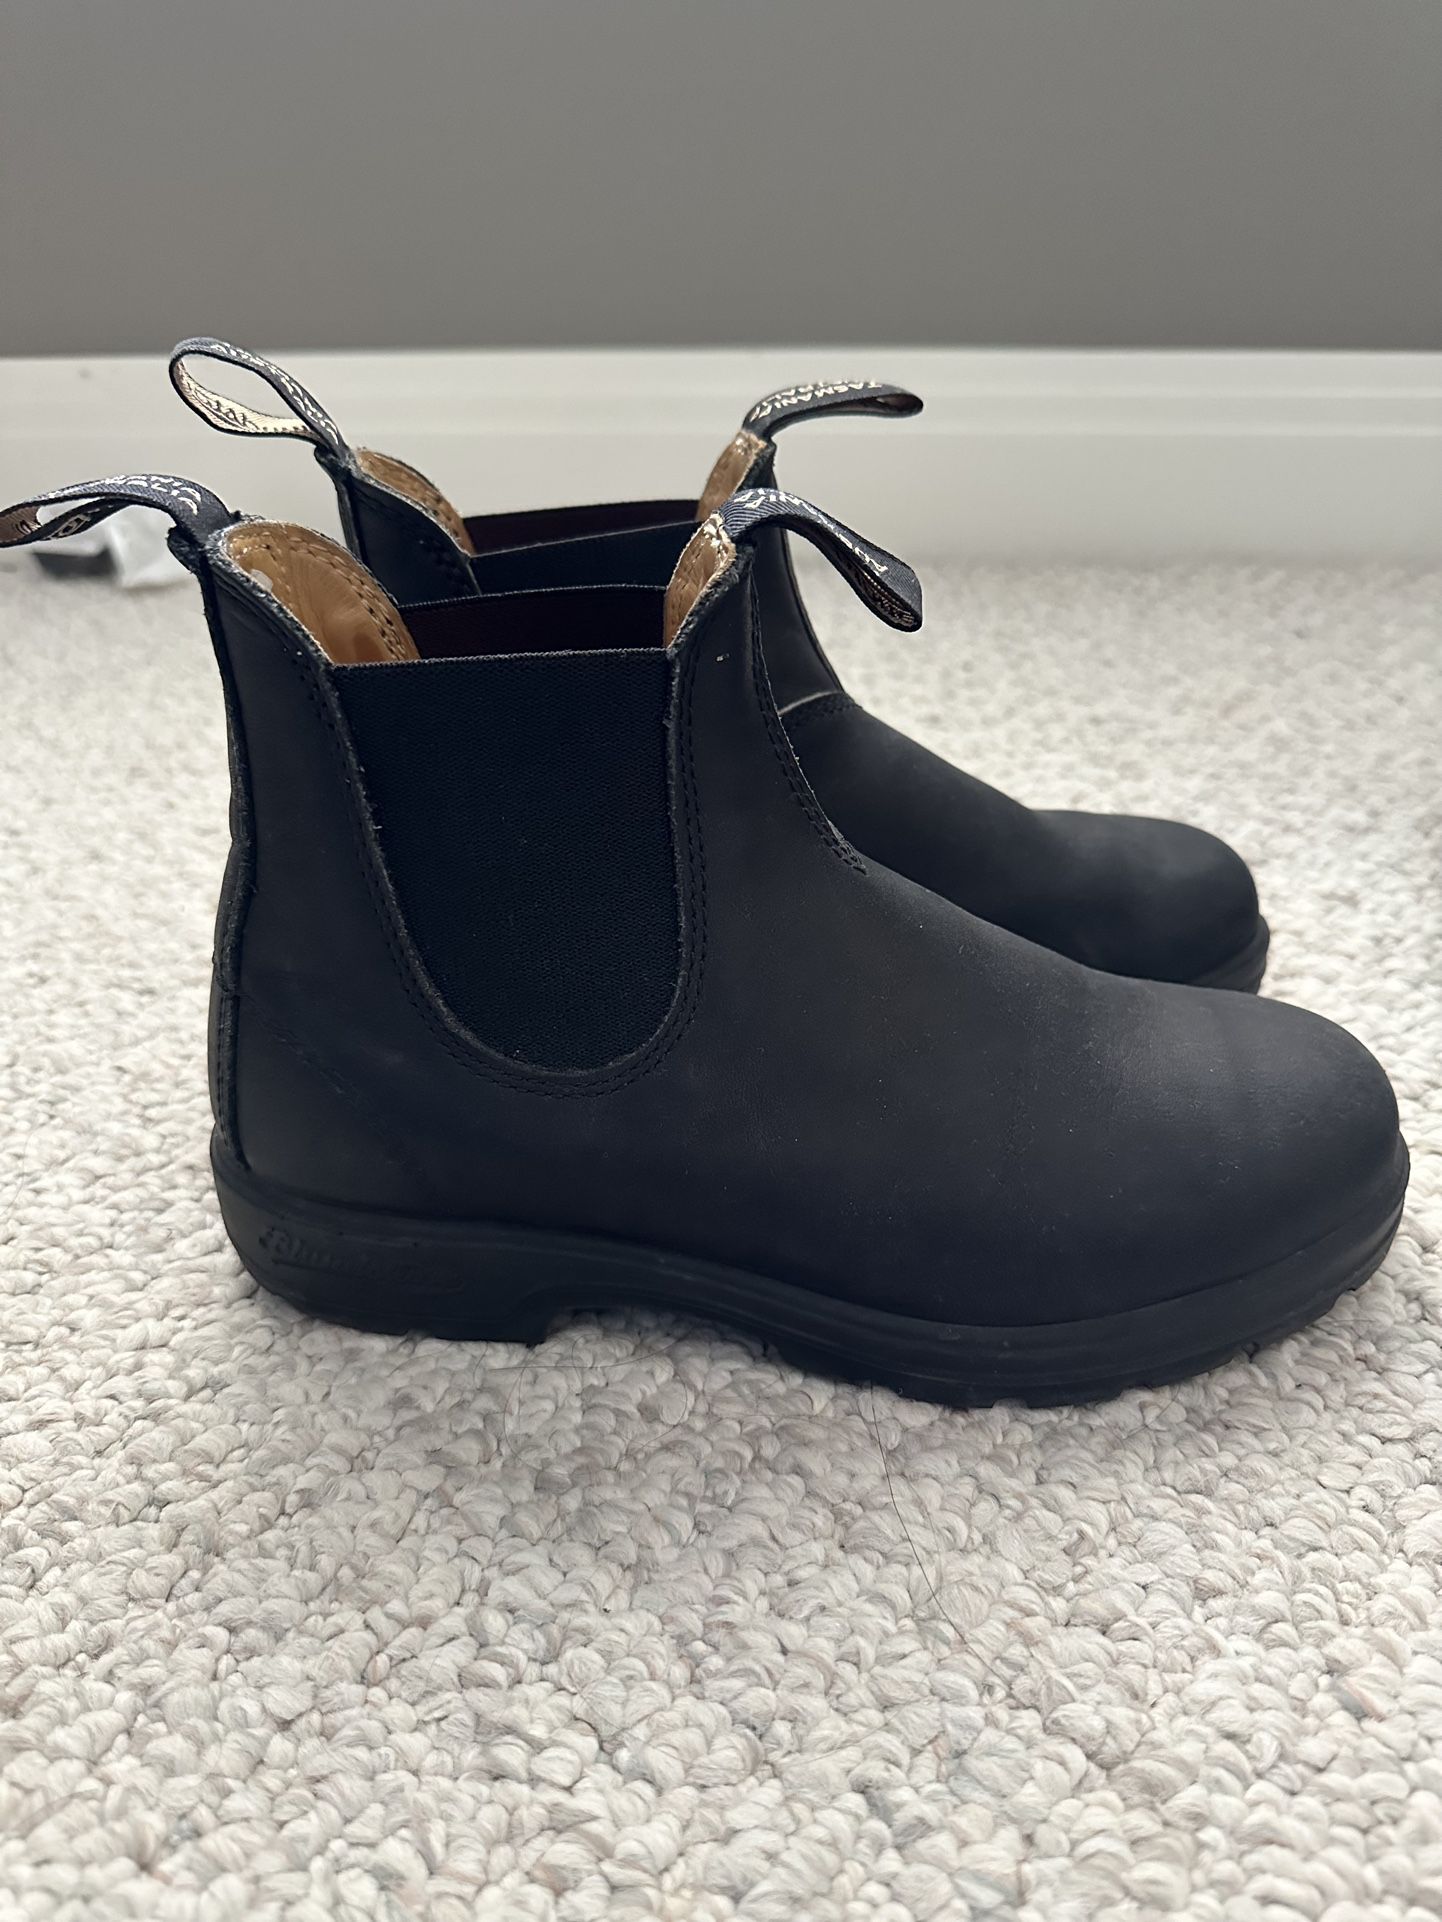 Blunderstone black boots Size 8 Women’s